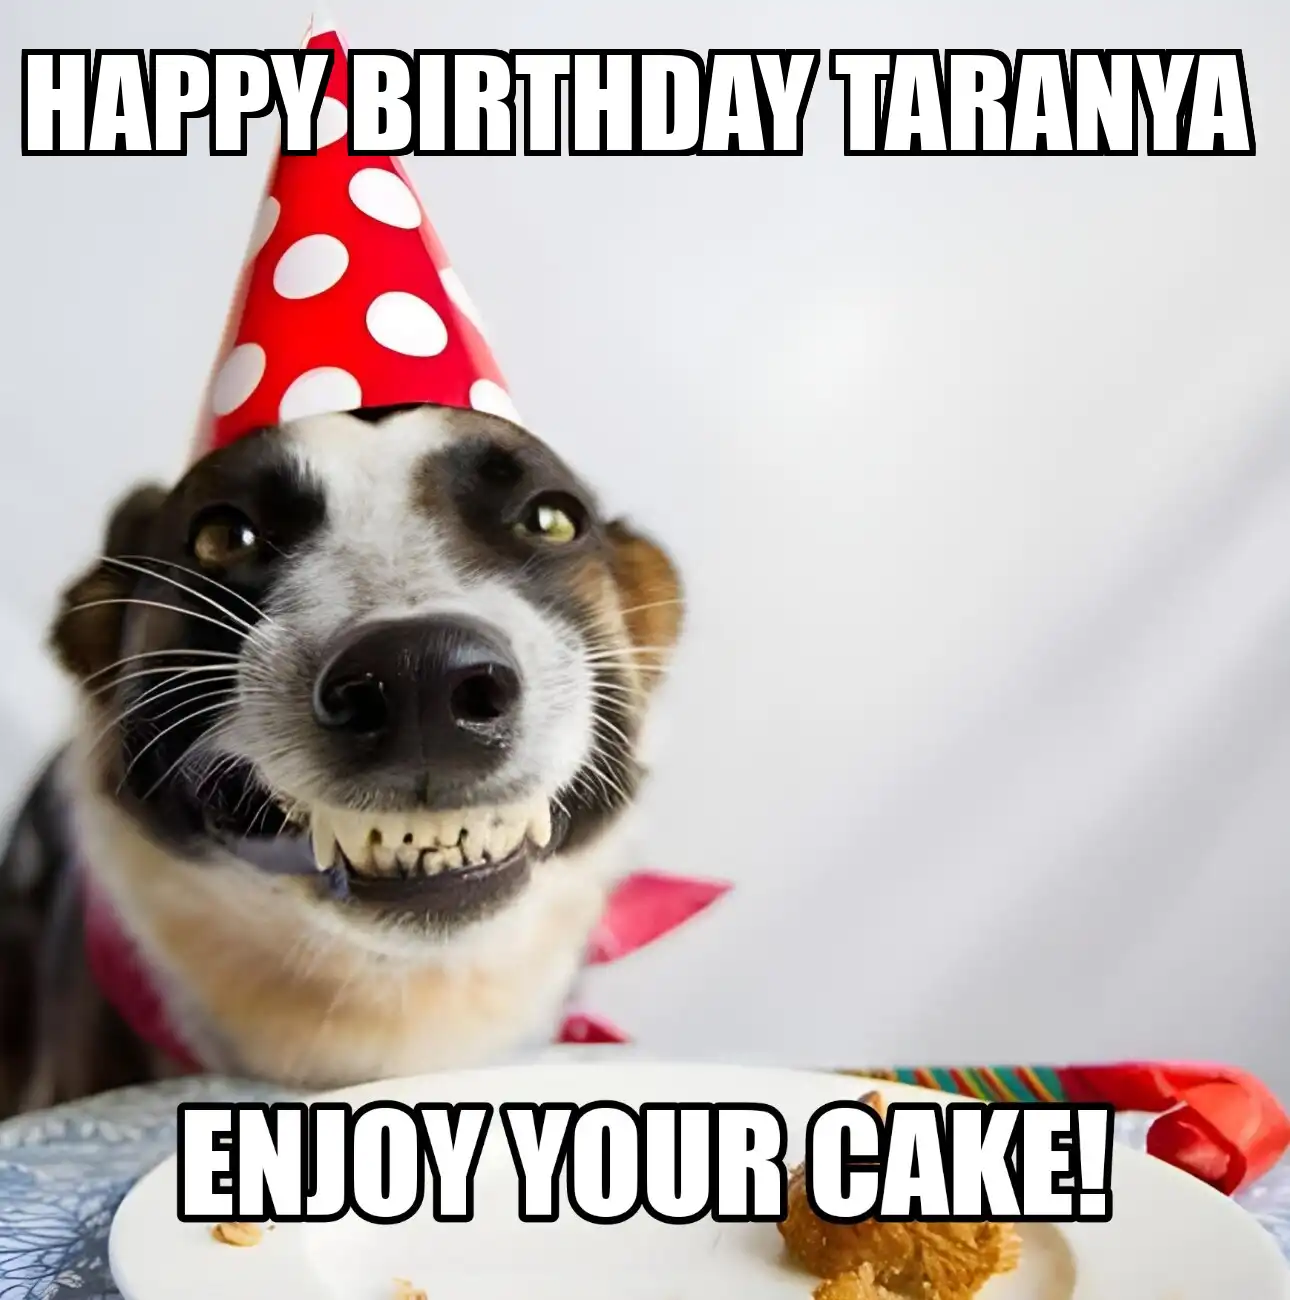 Happy Birthday Taranya Enjoy Your Cake Dog Meme